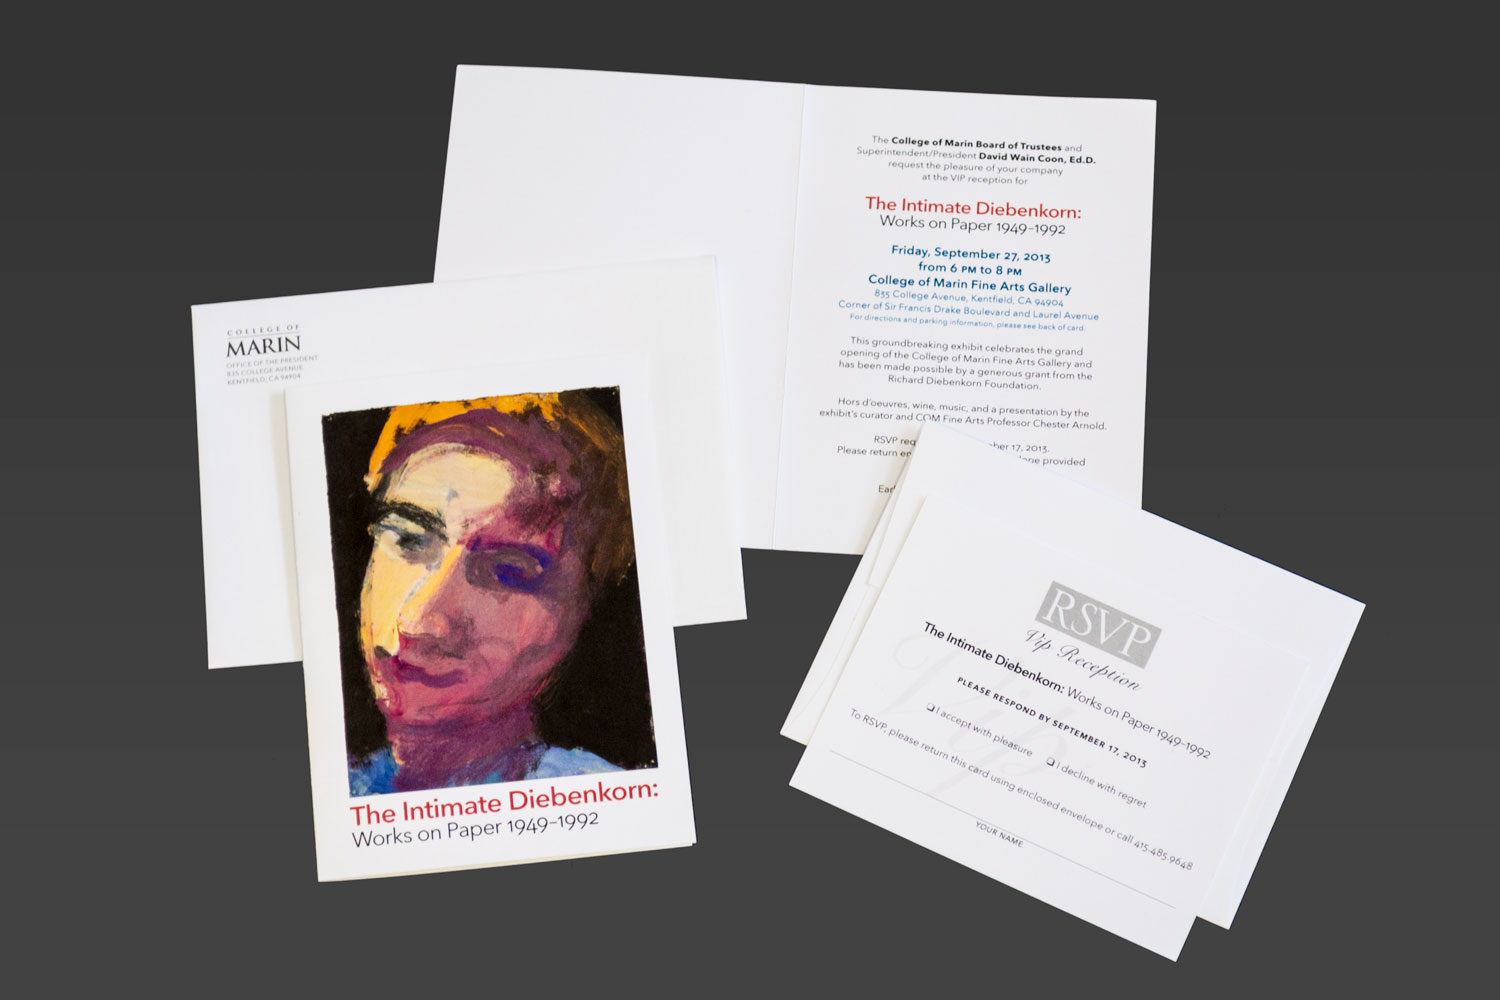 Mail invitation for Richard Diebenkorn art exhibit at College of Marin